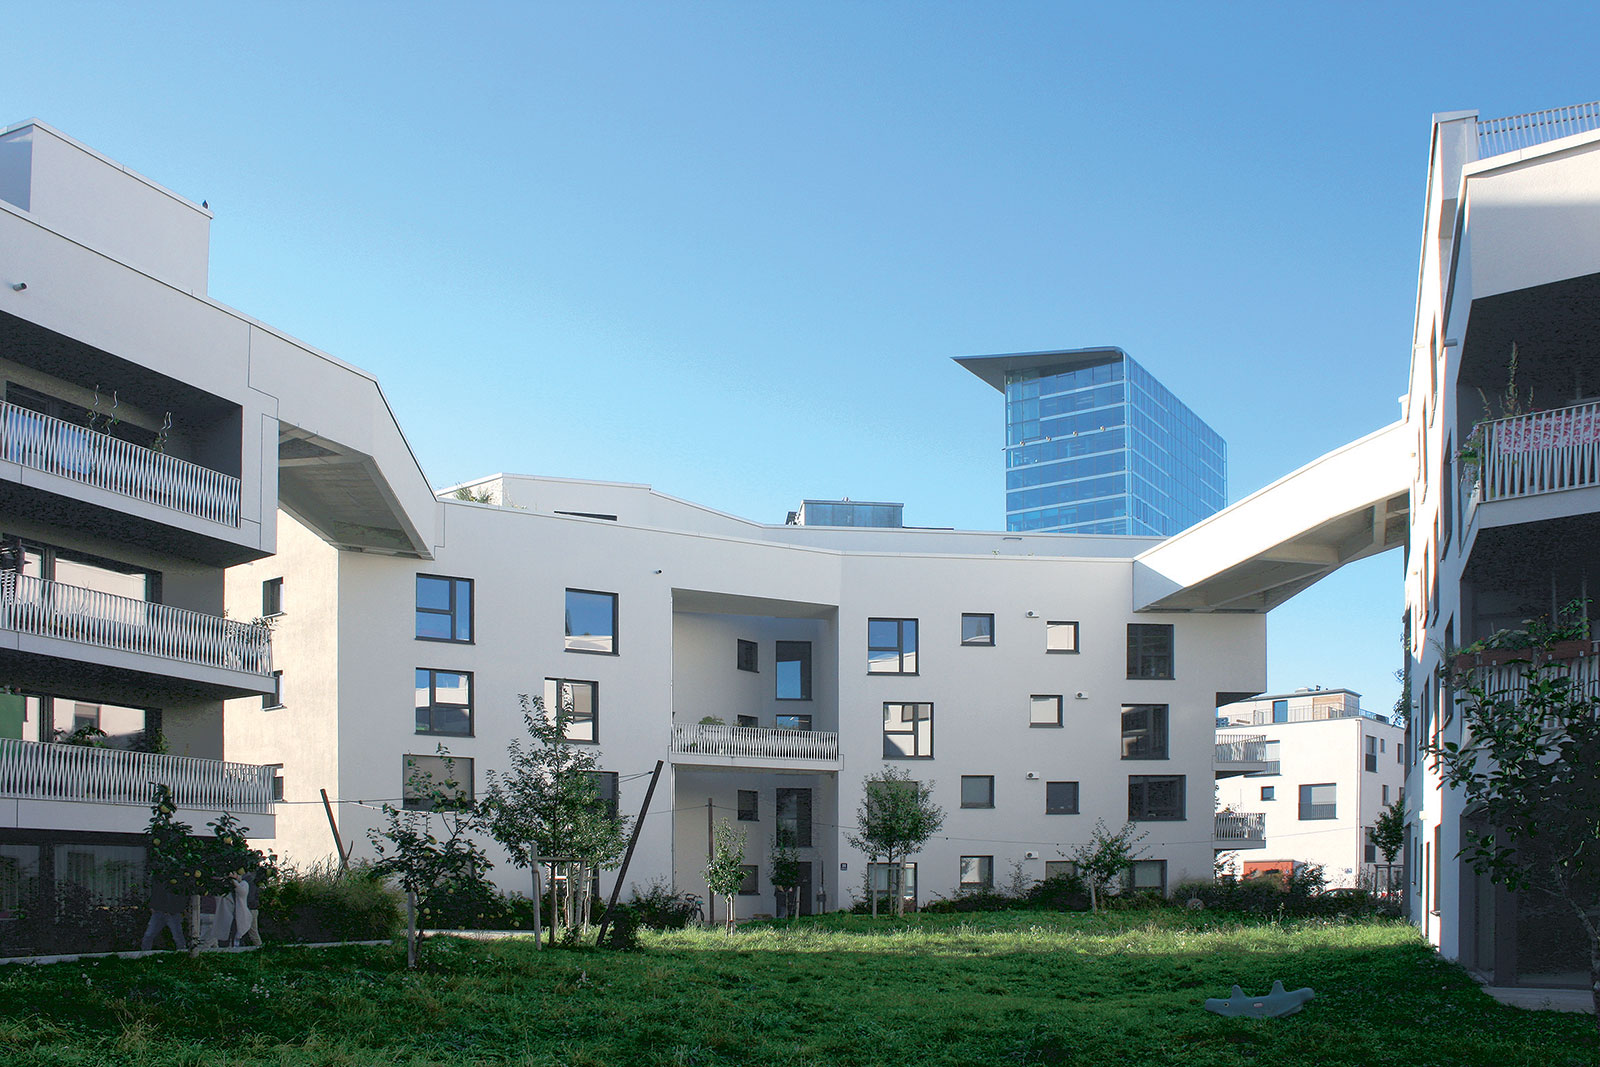 Neľahké hľadanie kompromisu medzi víziou architektov a požiadavkami komunity obyvateľov dopadla nad očakávania. Komplexu sociálnych bytov WagnisART to prinieslo bohatú paletu spoločných priestorov. Architektom zase ocenenie DAM Preis 2018 za najlepší architektonický počin pochádzajúci z Nemecka.